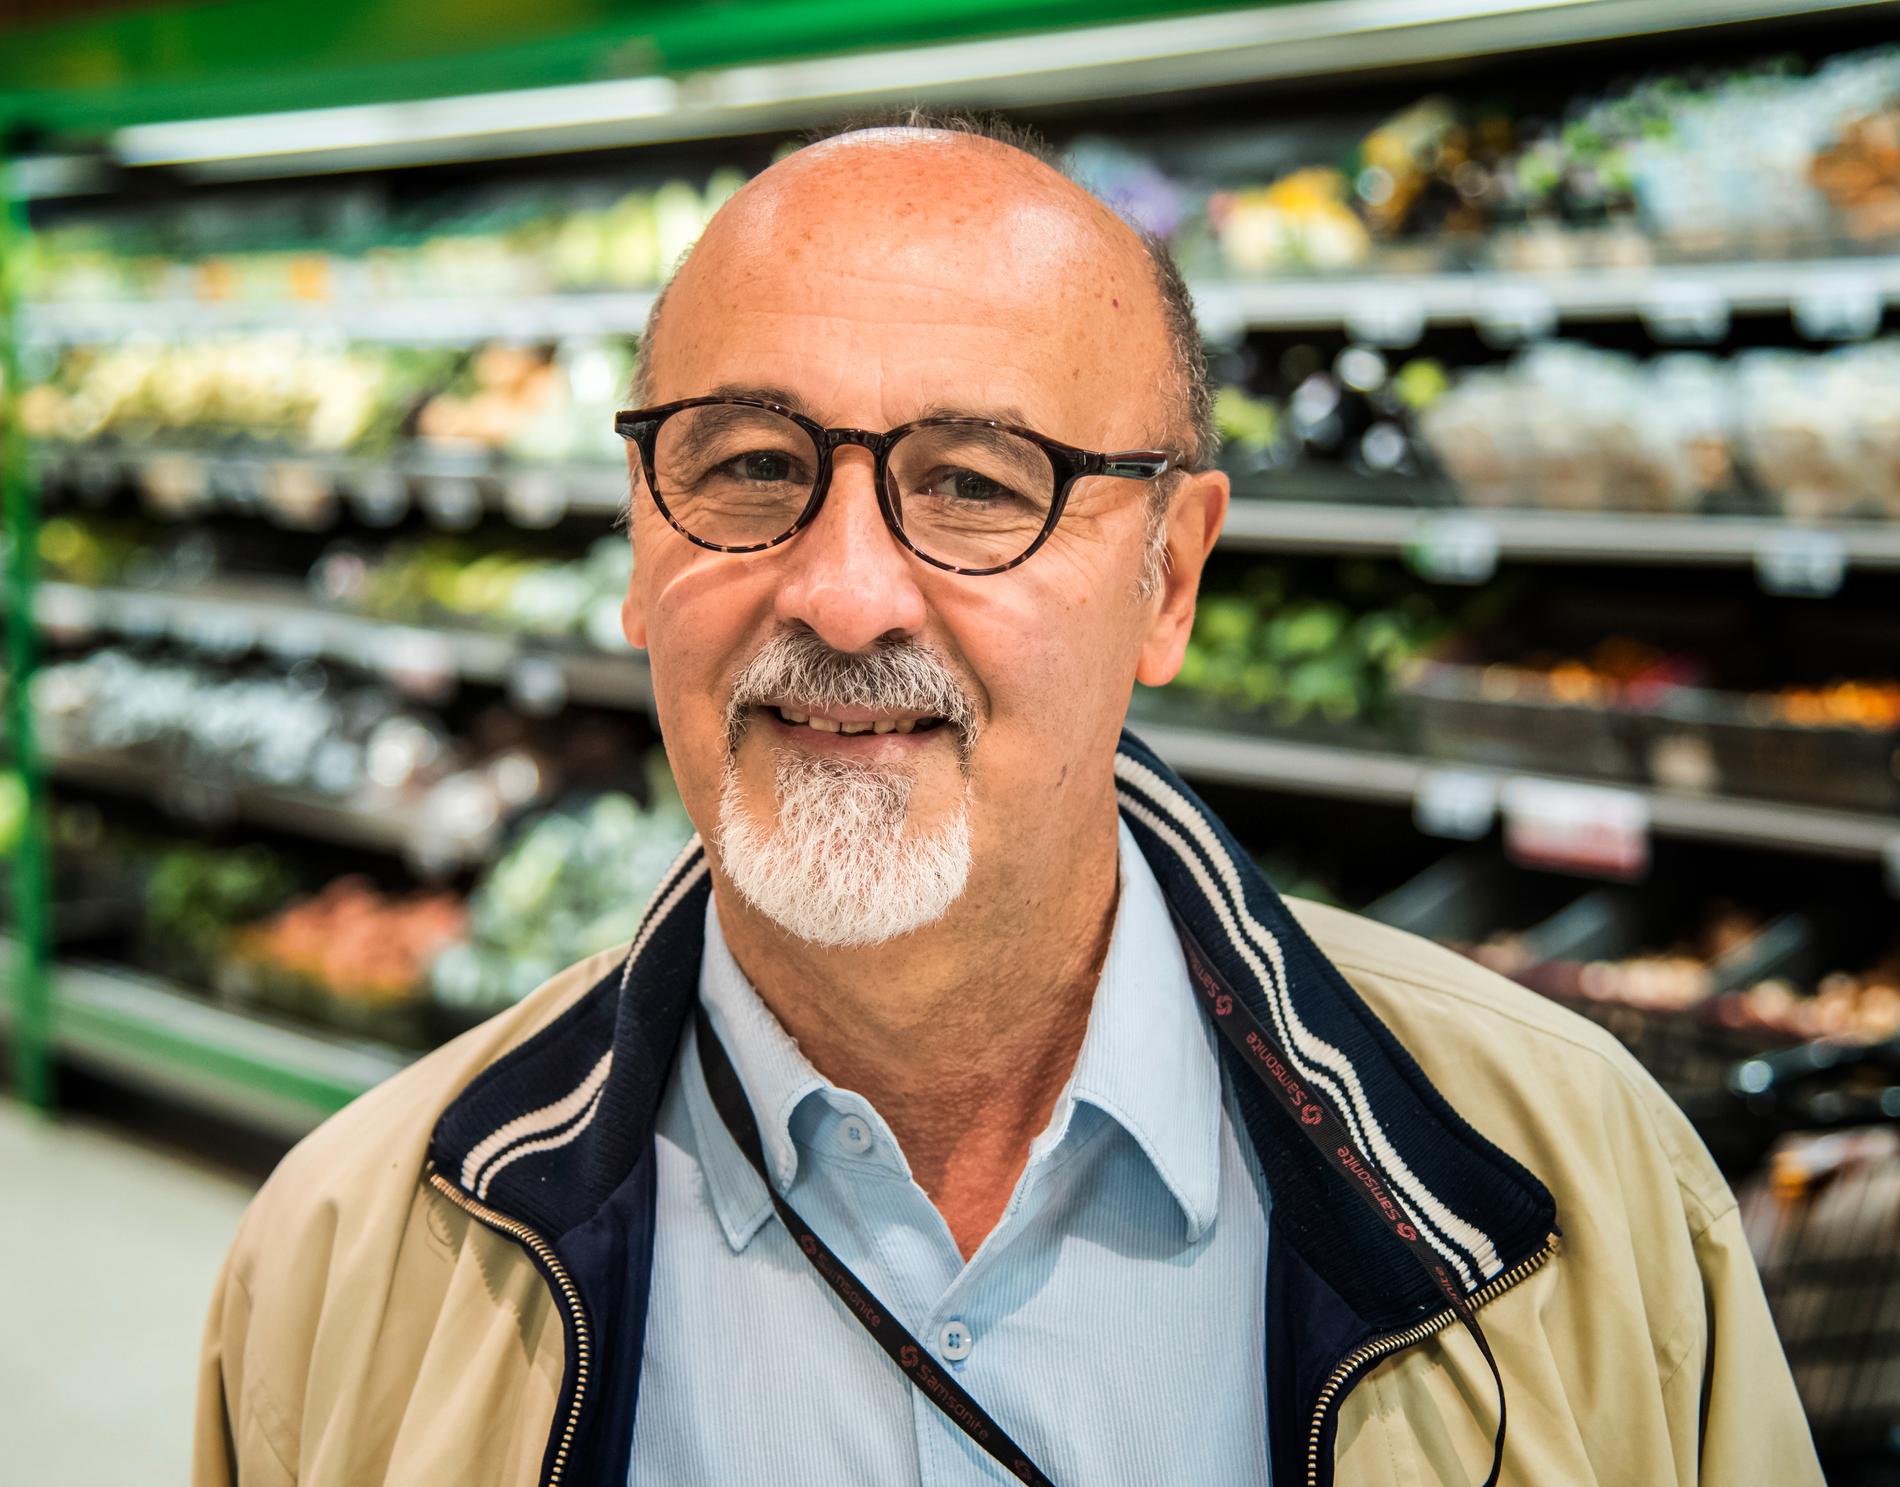 Är grönsakerna för dyra?– Ja, i södra Italien där jag kommer från är priserna mycket lägre. Om man inte producerar mycket måste man importera, då kostar det mer, säger Nico Vozza, 64, präst, Stockholm.